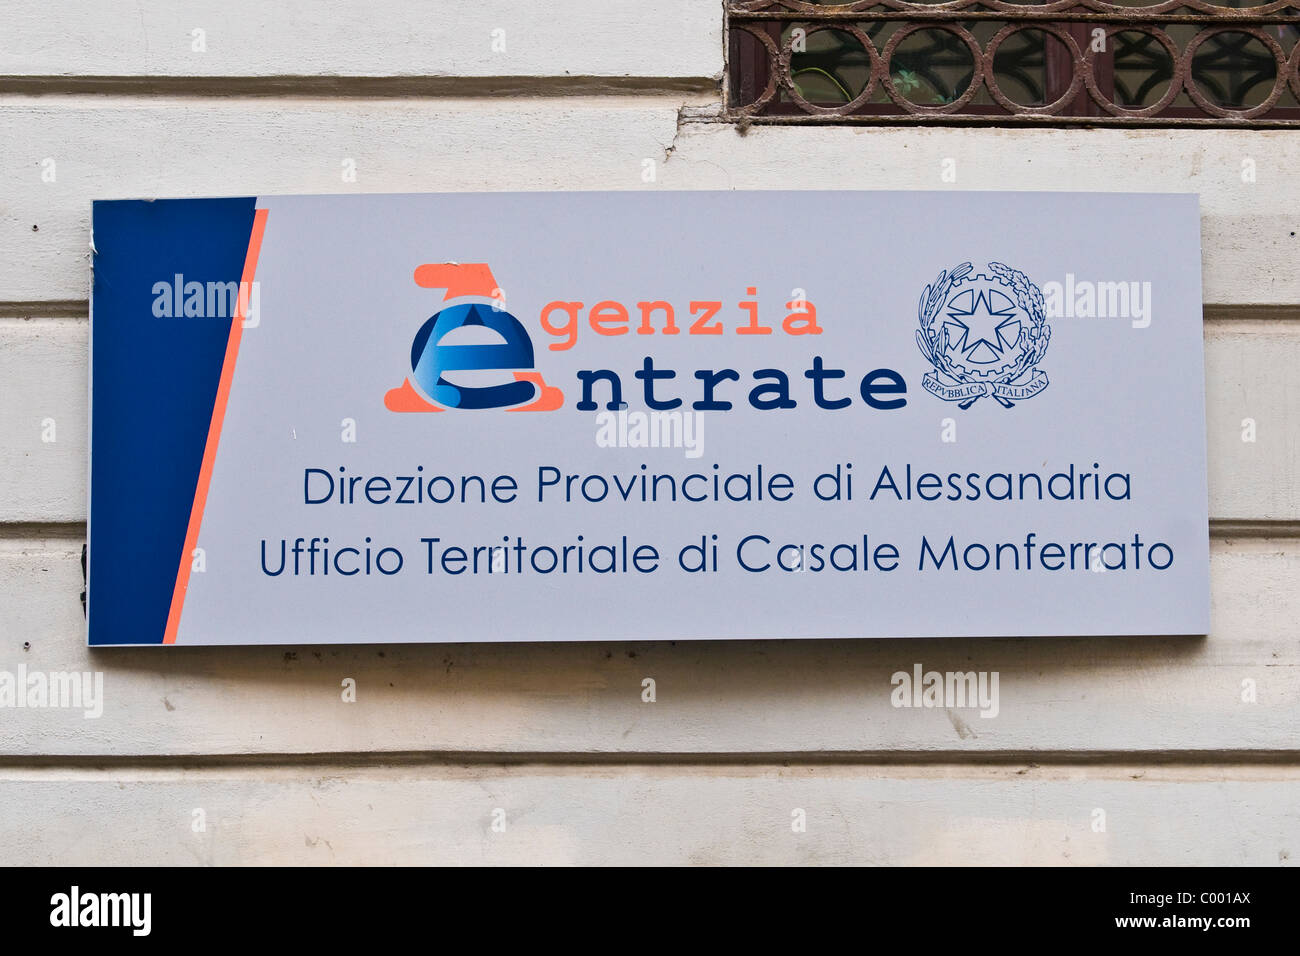 Agenzia Entrate, tax office, Casale Monferrato, province d'Alessandria, Italie Banque D'Images